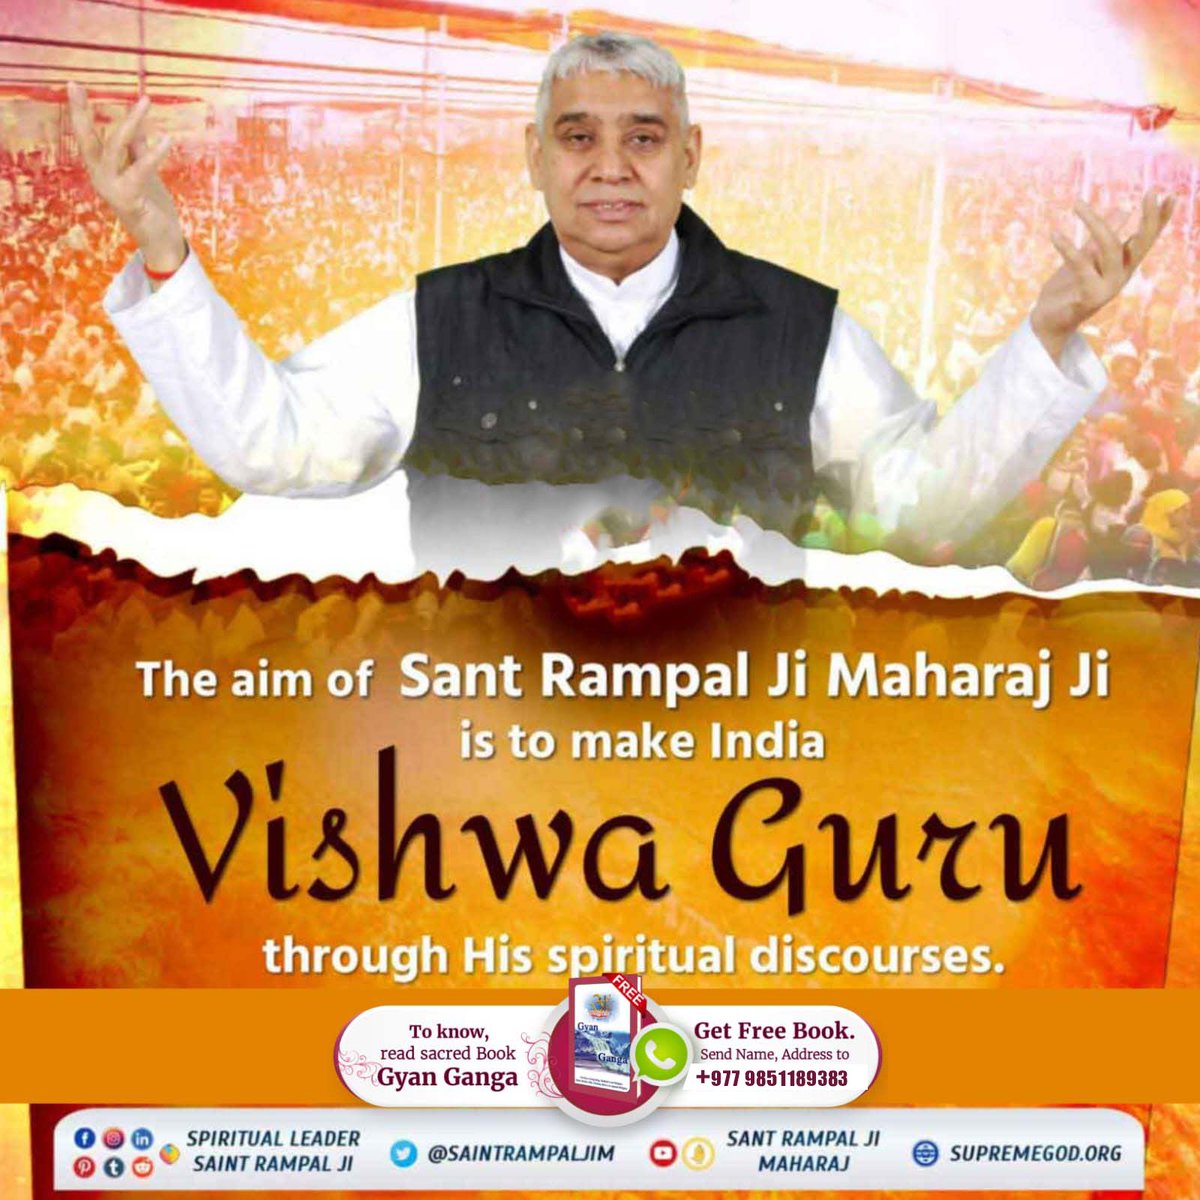 #AimOfSantRampalJi
The aim of Sant Rampal Ji Maharaj Ji is to make India Vishwa Guru through his spiritual discourses.